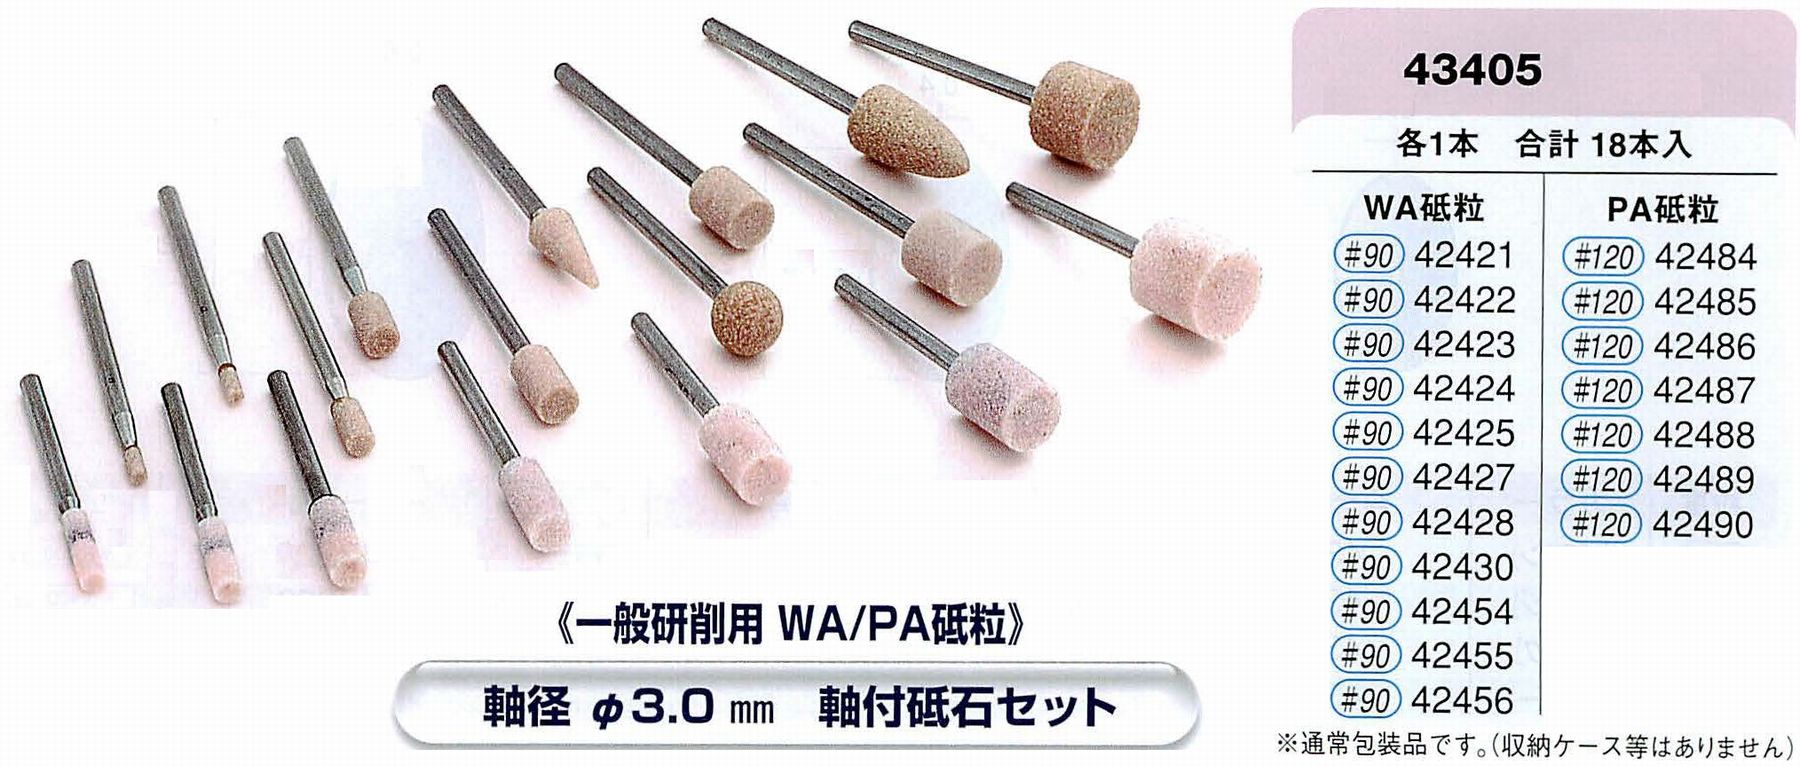 ナカニシ/NAKANISHI 軸付砥石・アソートセット 軸径φ3.0mm 軸付砥石セット(一般研削用 WA/PA砥粒) 43405